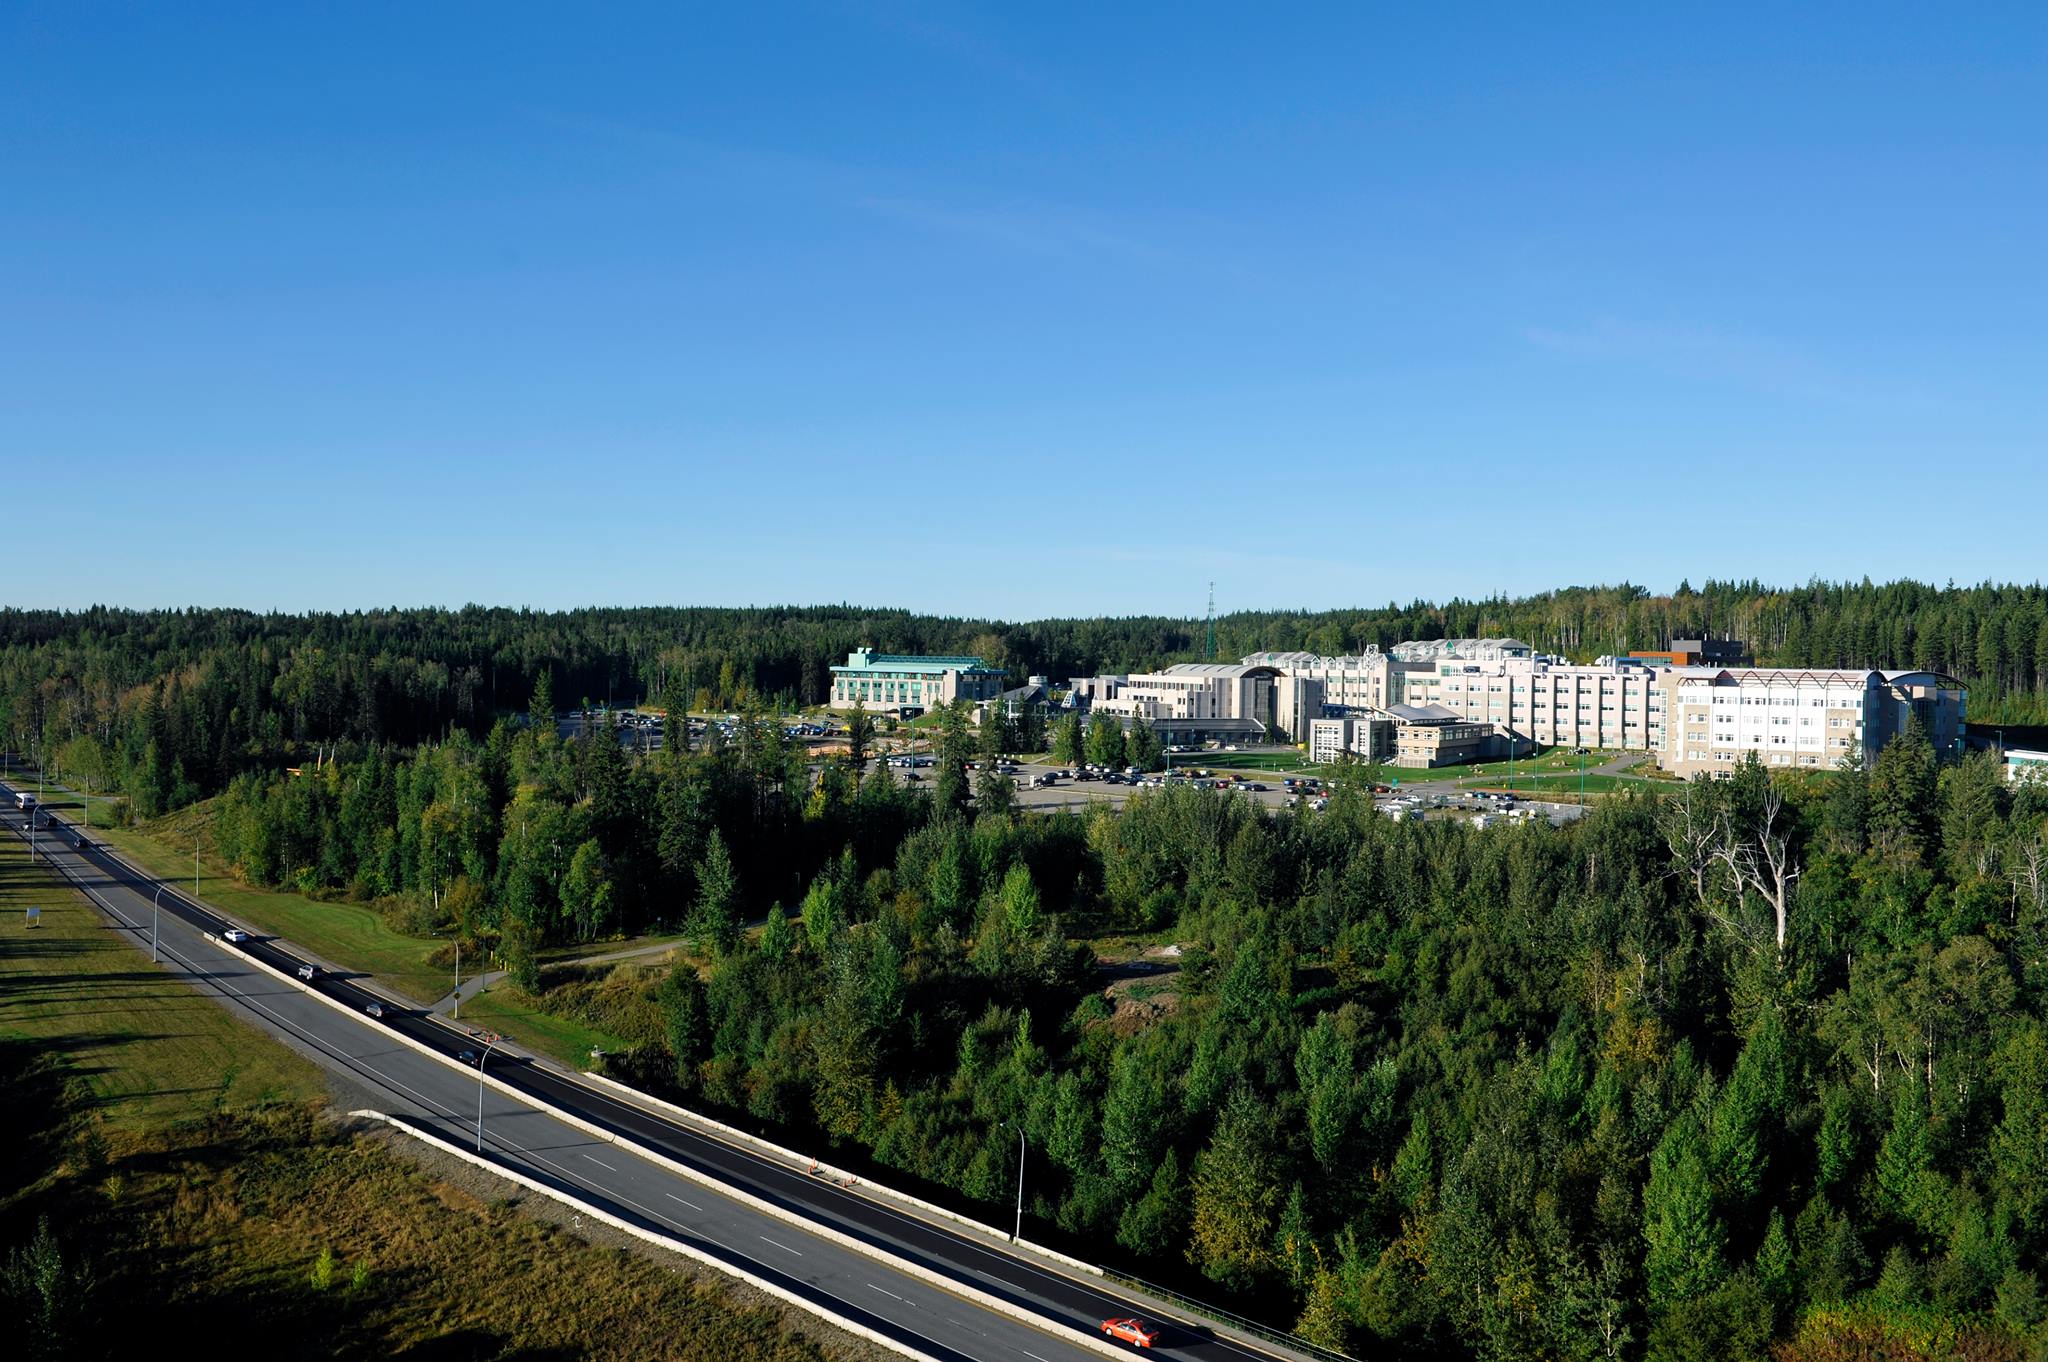 جامعة شمال كولومبيا البريطانية – Northern British Columbia University